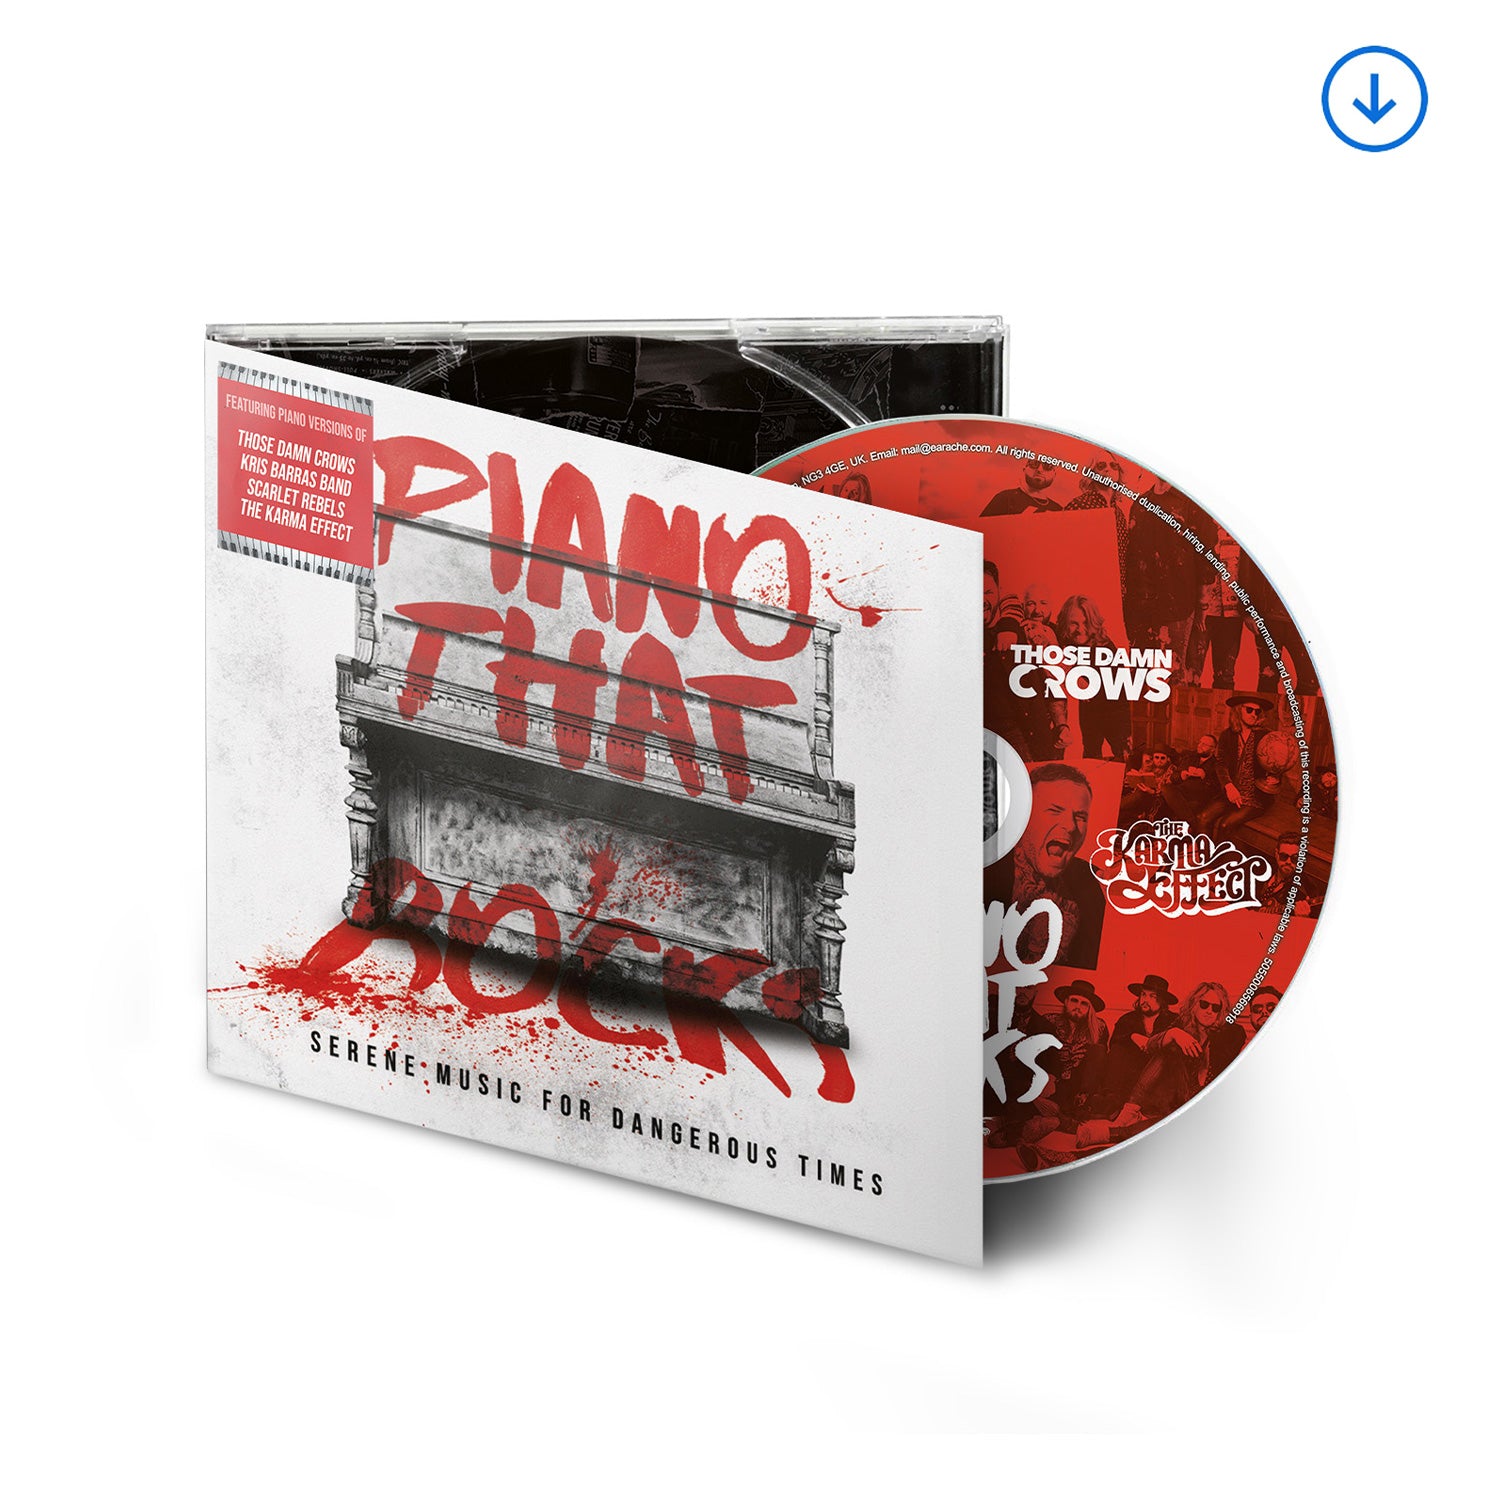 Var. "Piano That Rocks" Digipak CD & Download - PRE-ORDER